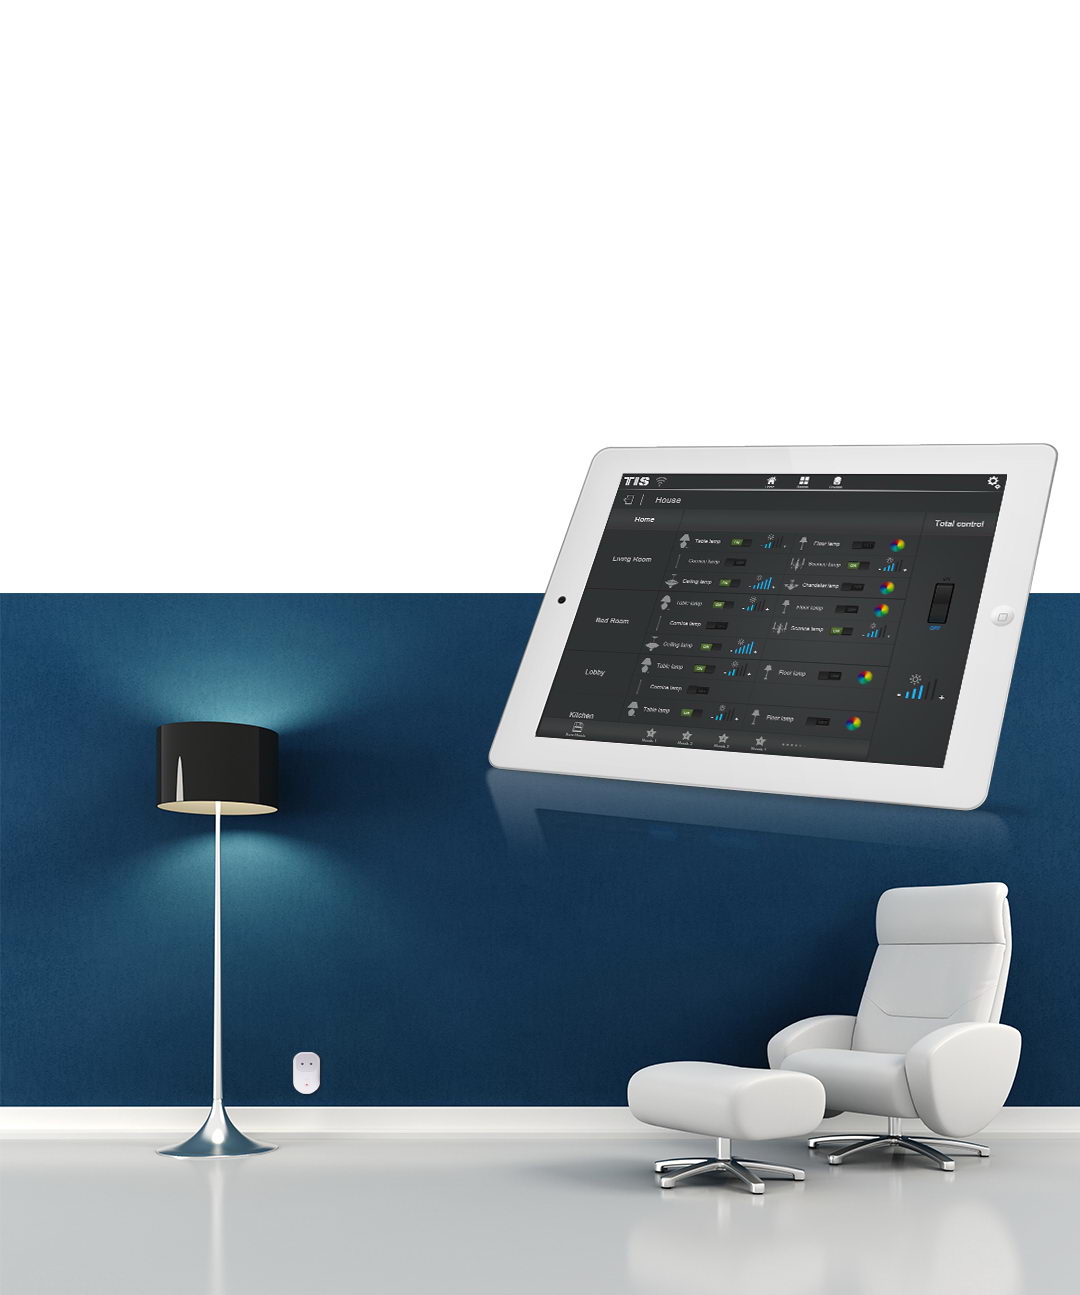 Controle as luzes da sua mesa com um tablet inteligente - TIS